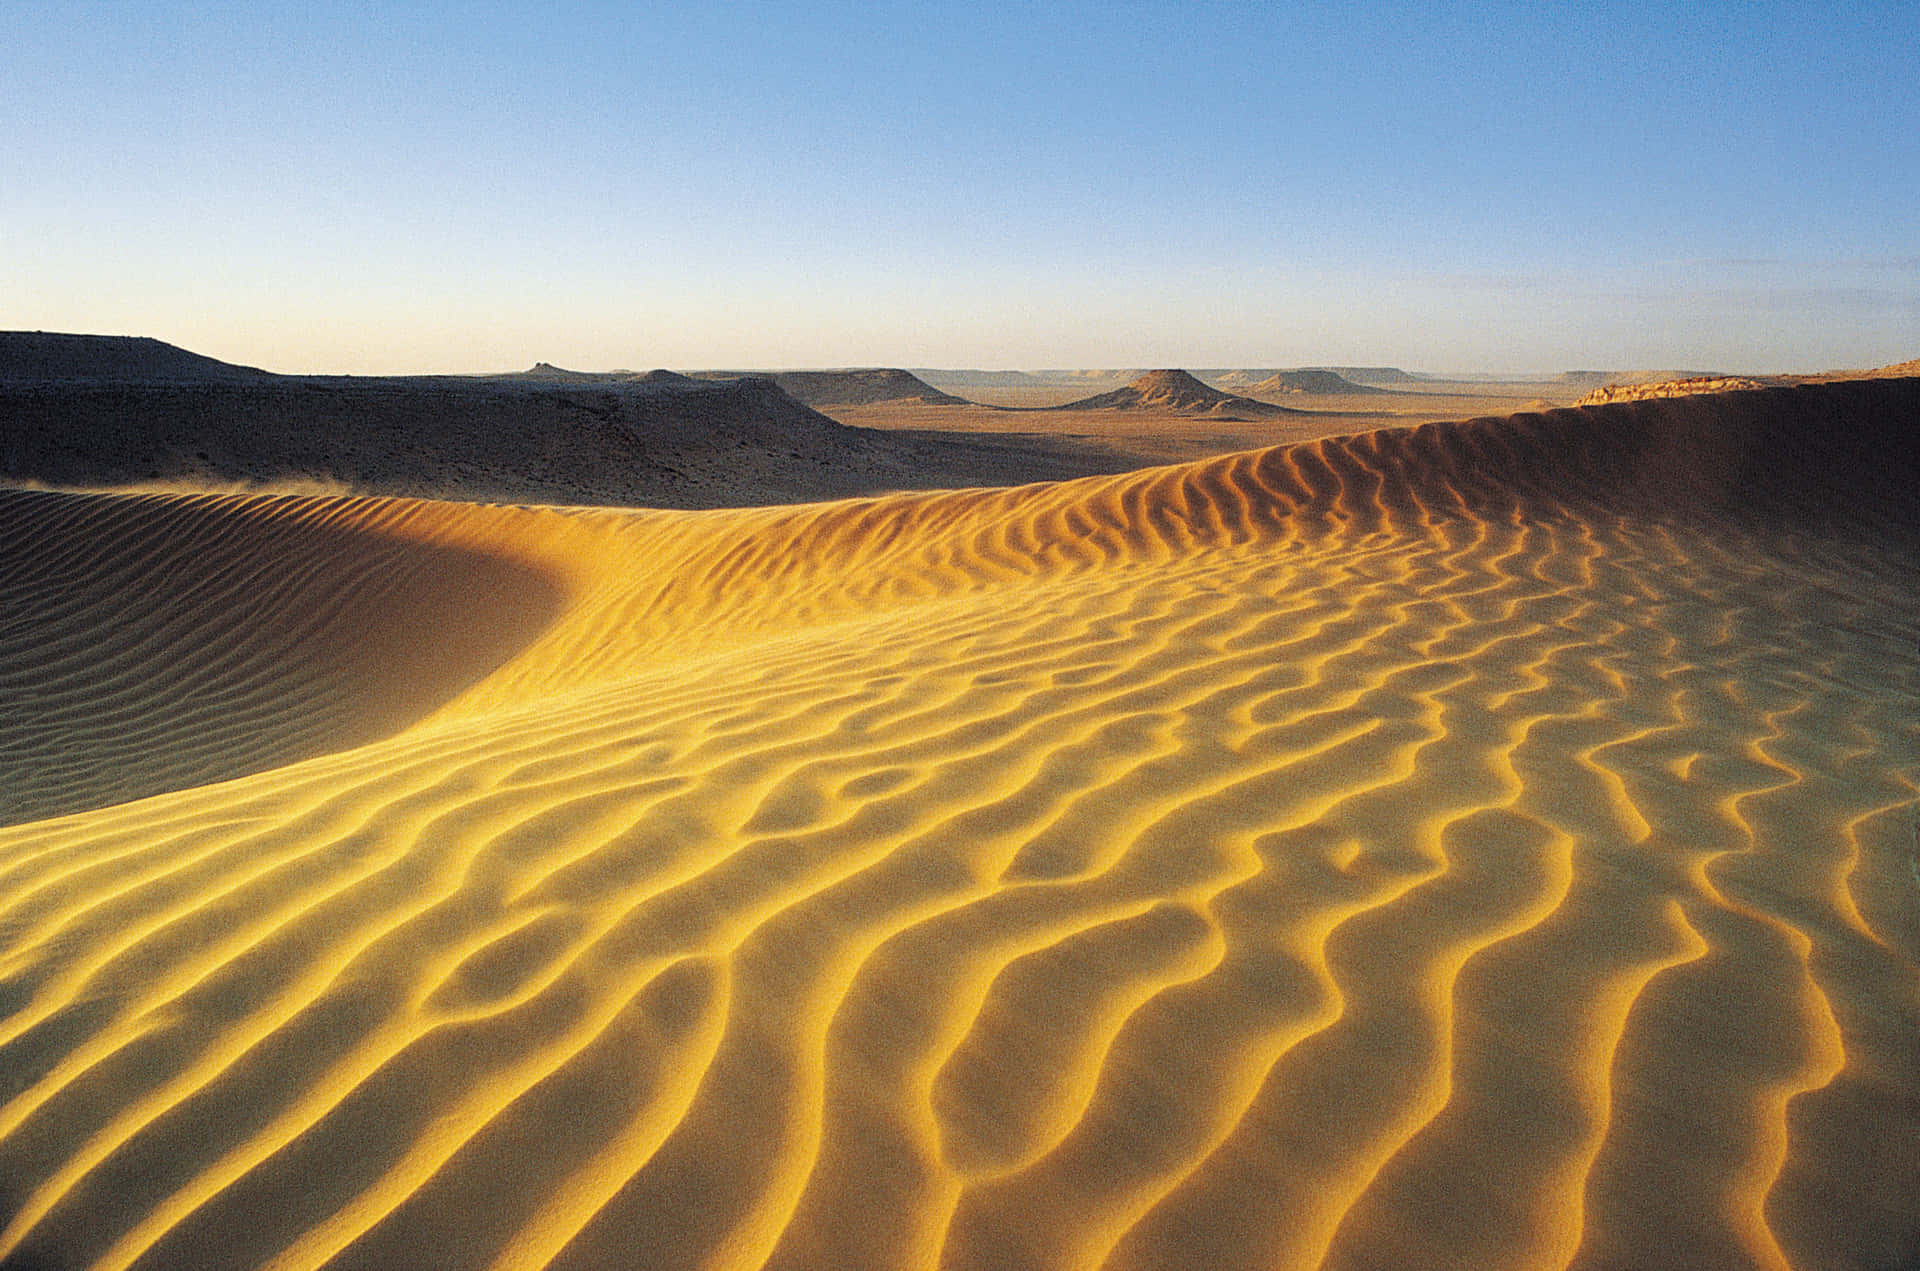 A Sand Dune In The Desert